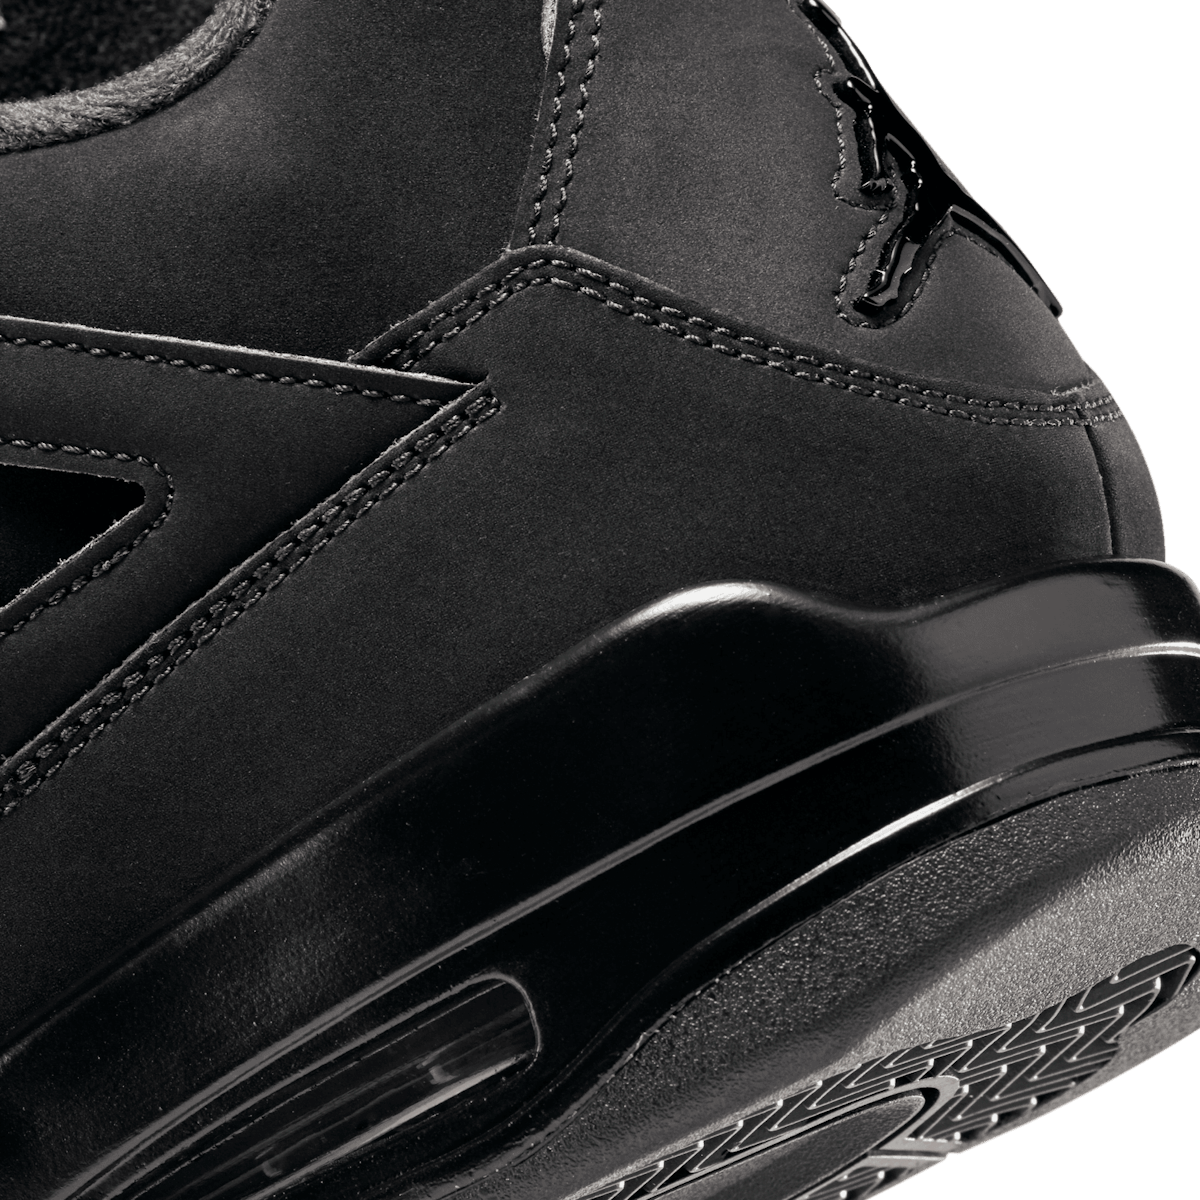 Air Jordan 4 Retro 'Black Cat' 2020 CU1110-010 - KICKS CREW